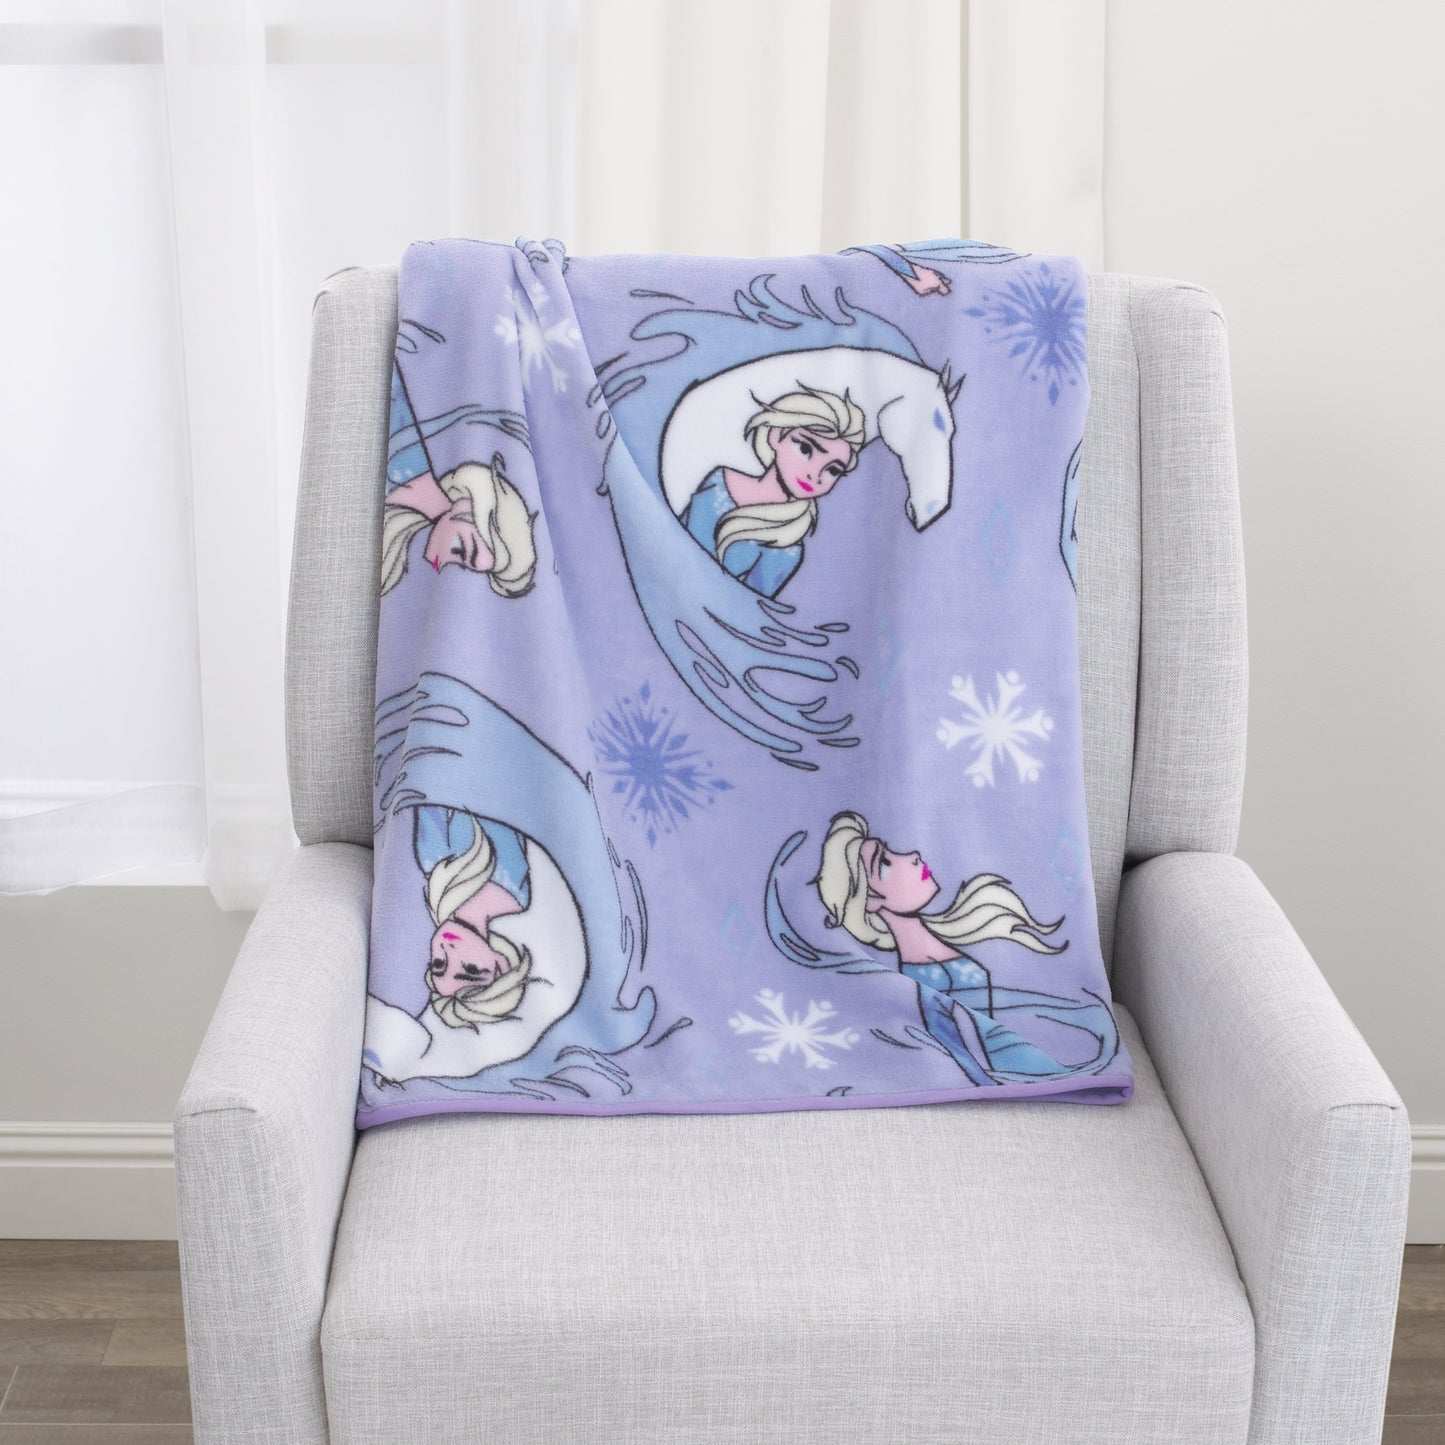 Disney Frozen 2 Elsa and Nokk Lavender and Pink Super Soft Toddler Blanket - 40"x 50"